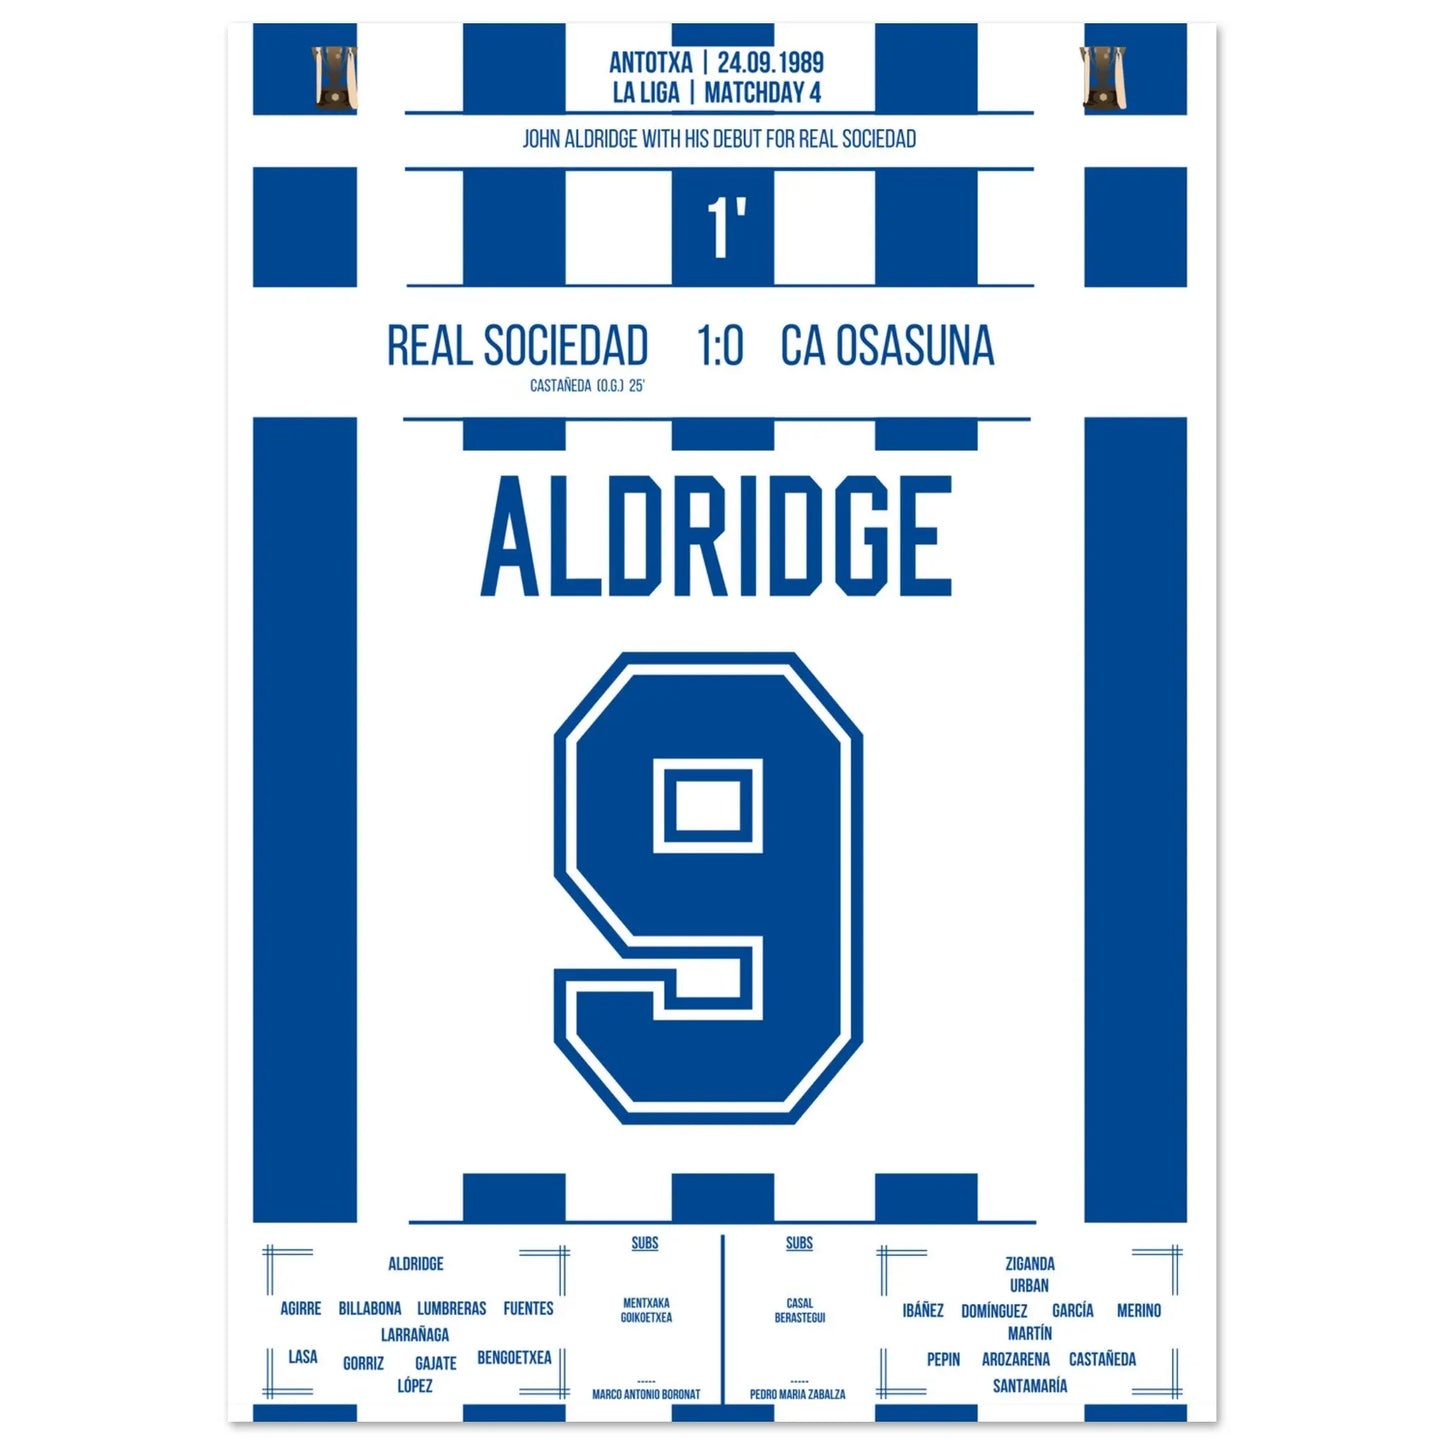 Debüt-Spiel von John Aldridge für Real Sociedad